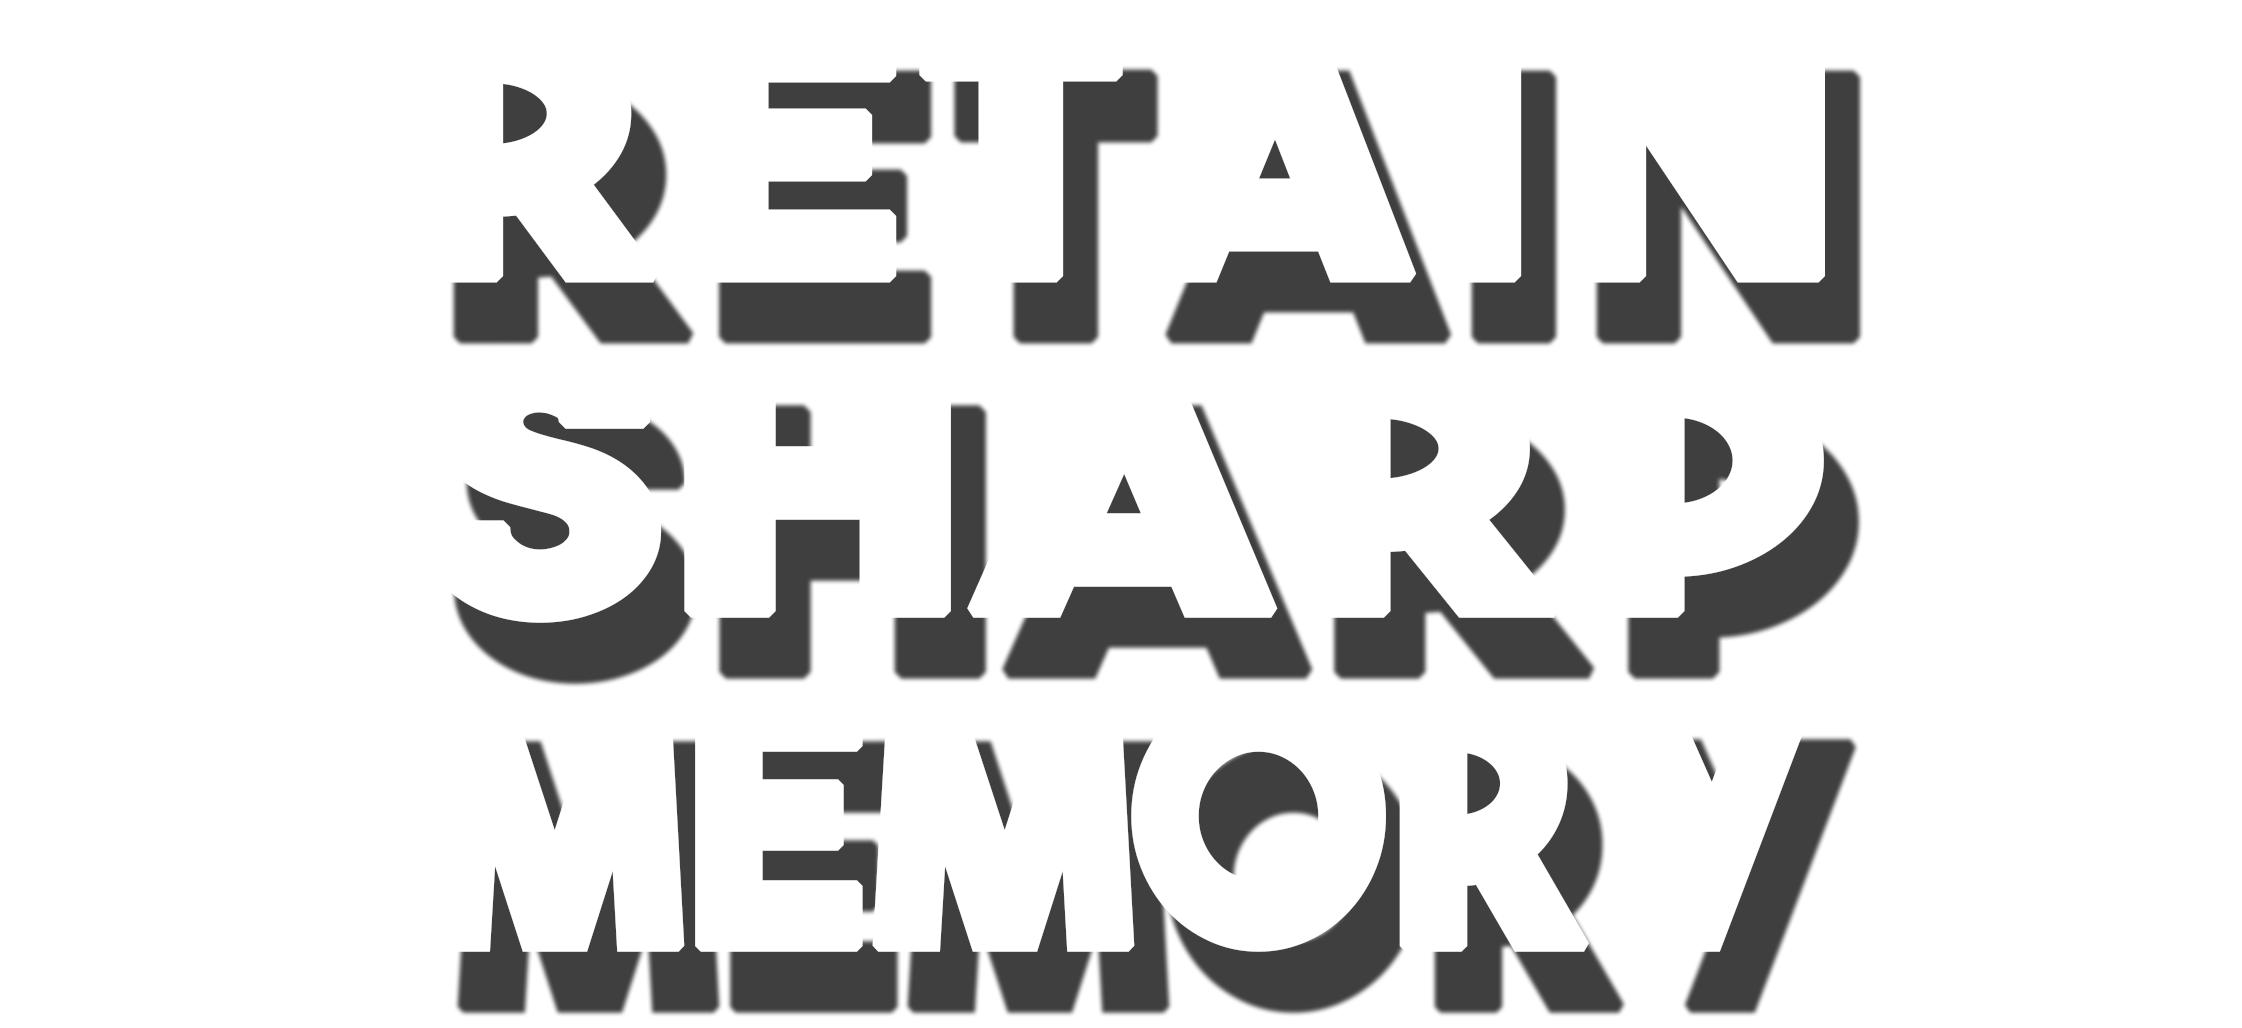 Retain Sharp Memory